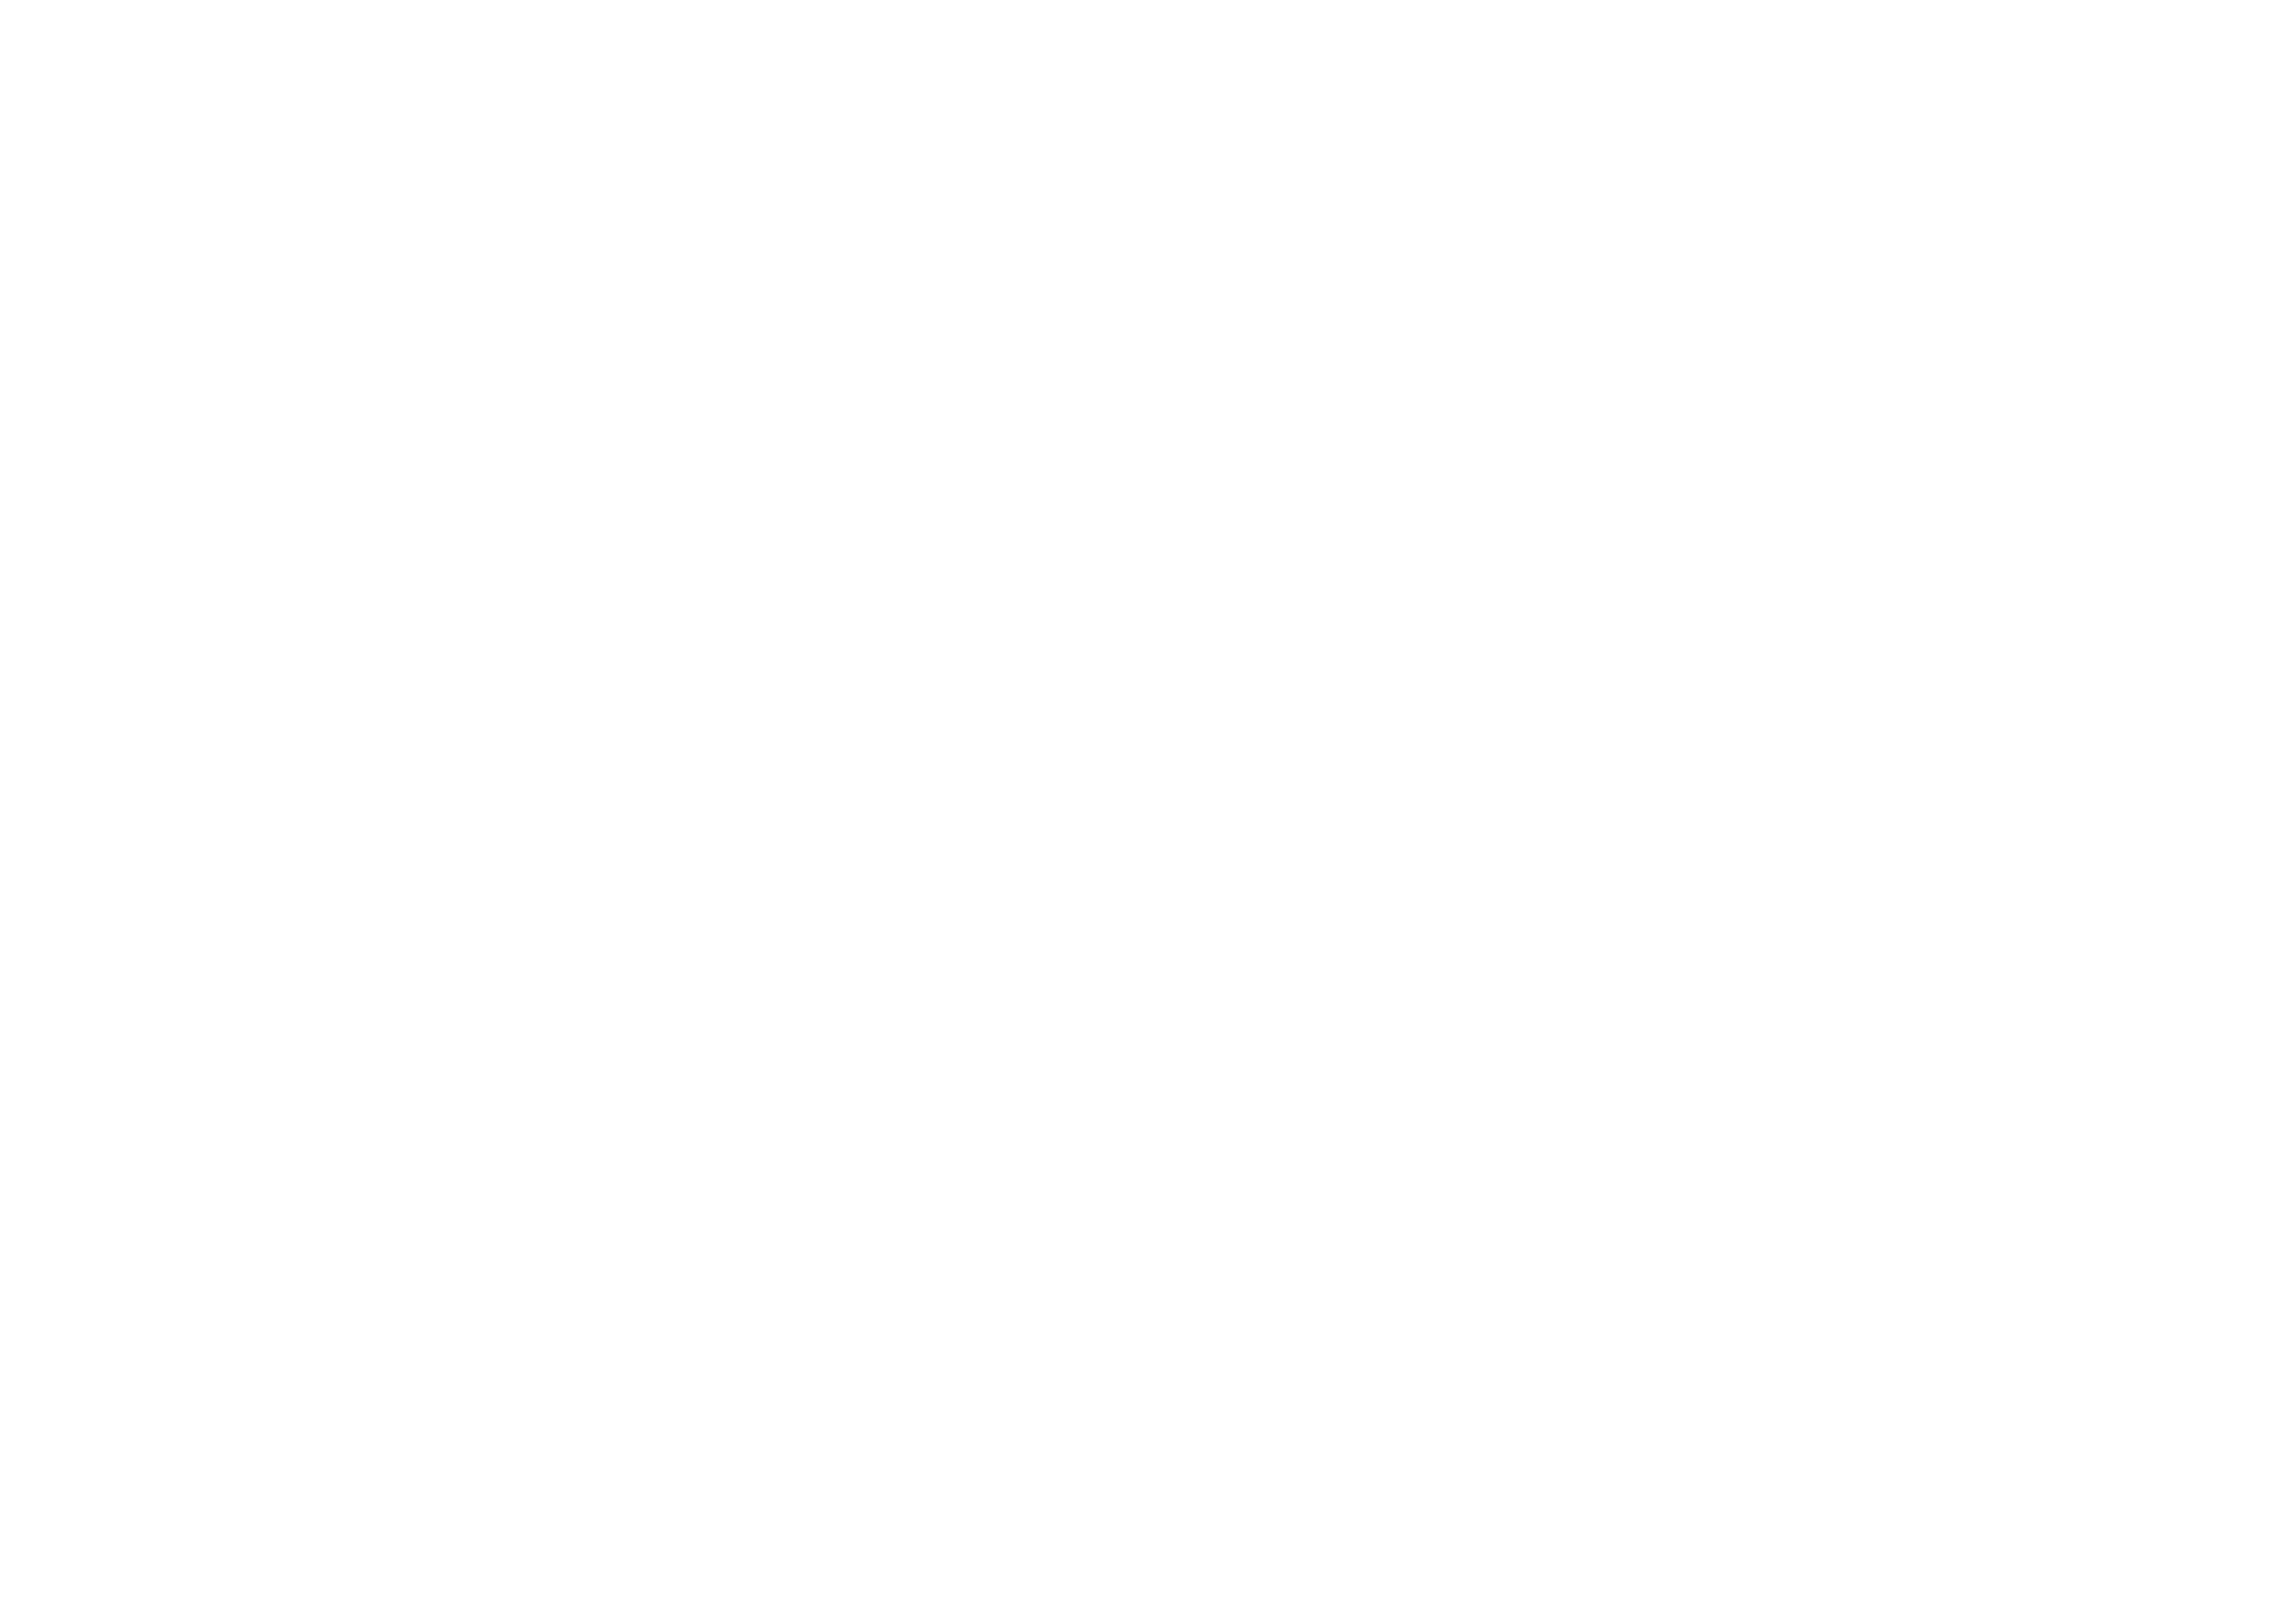 DEMA Solutions